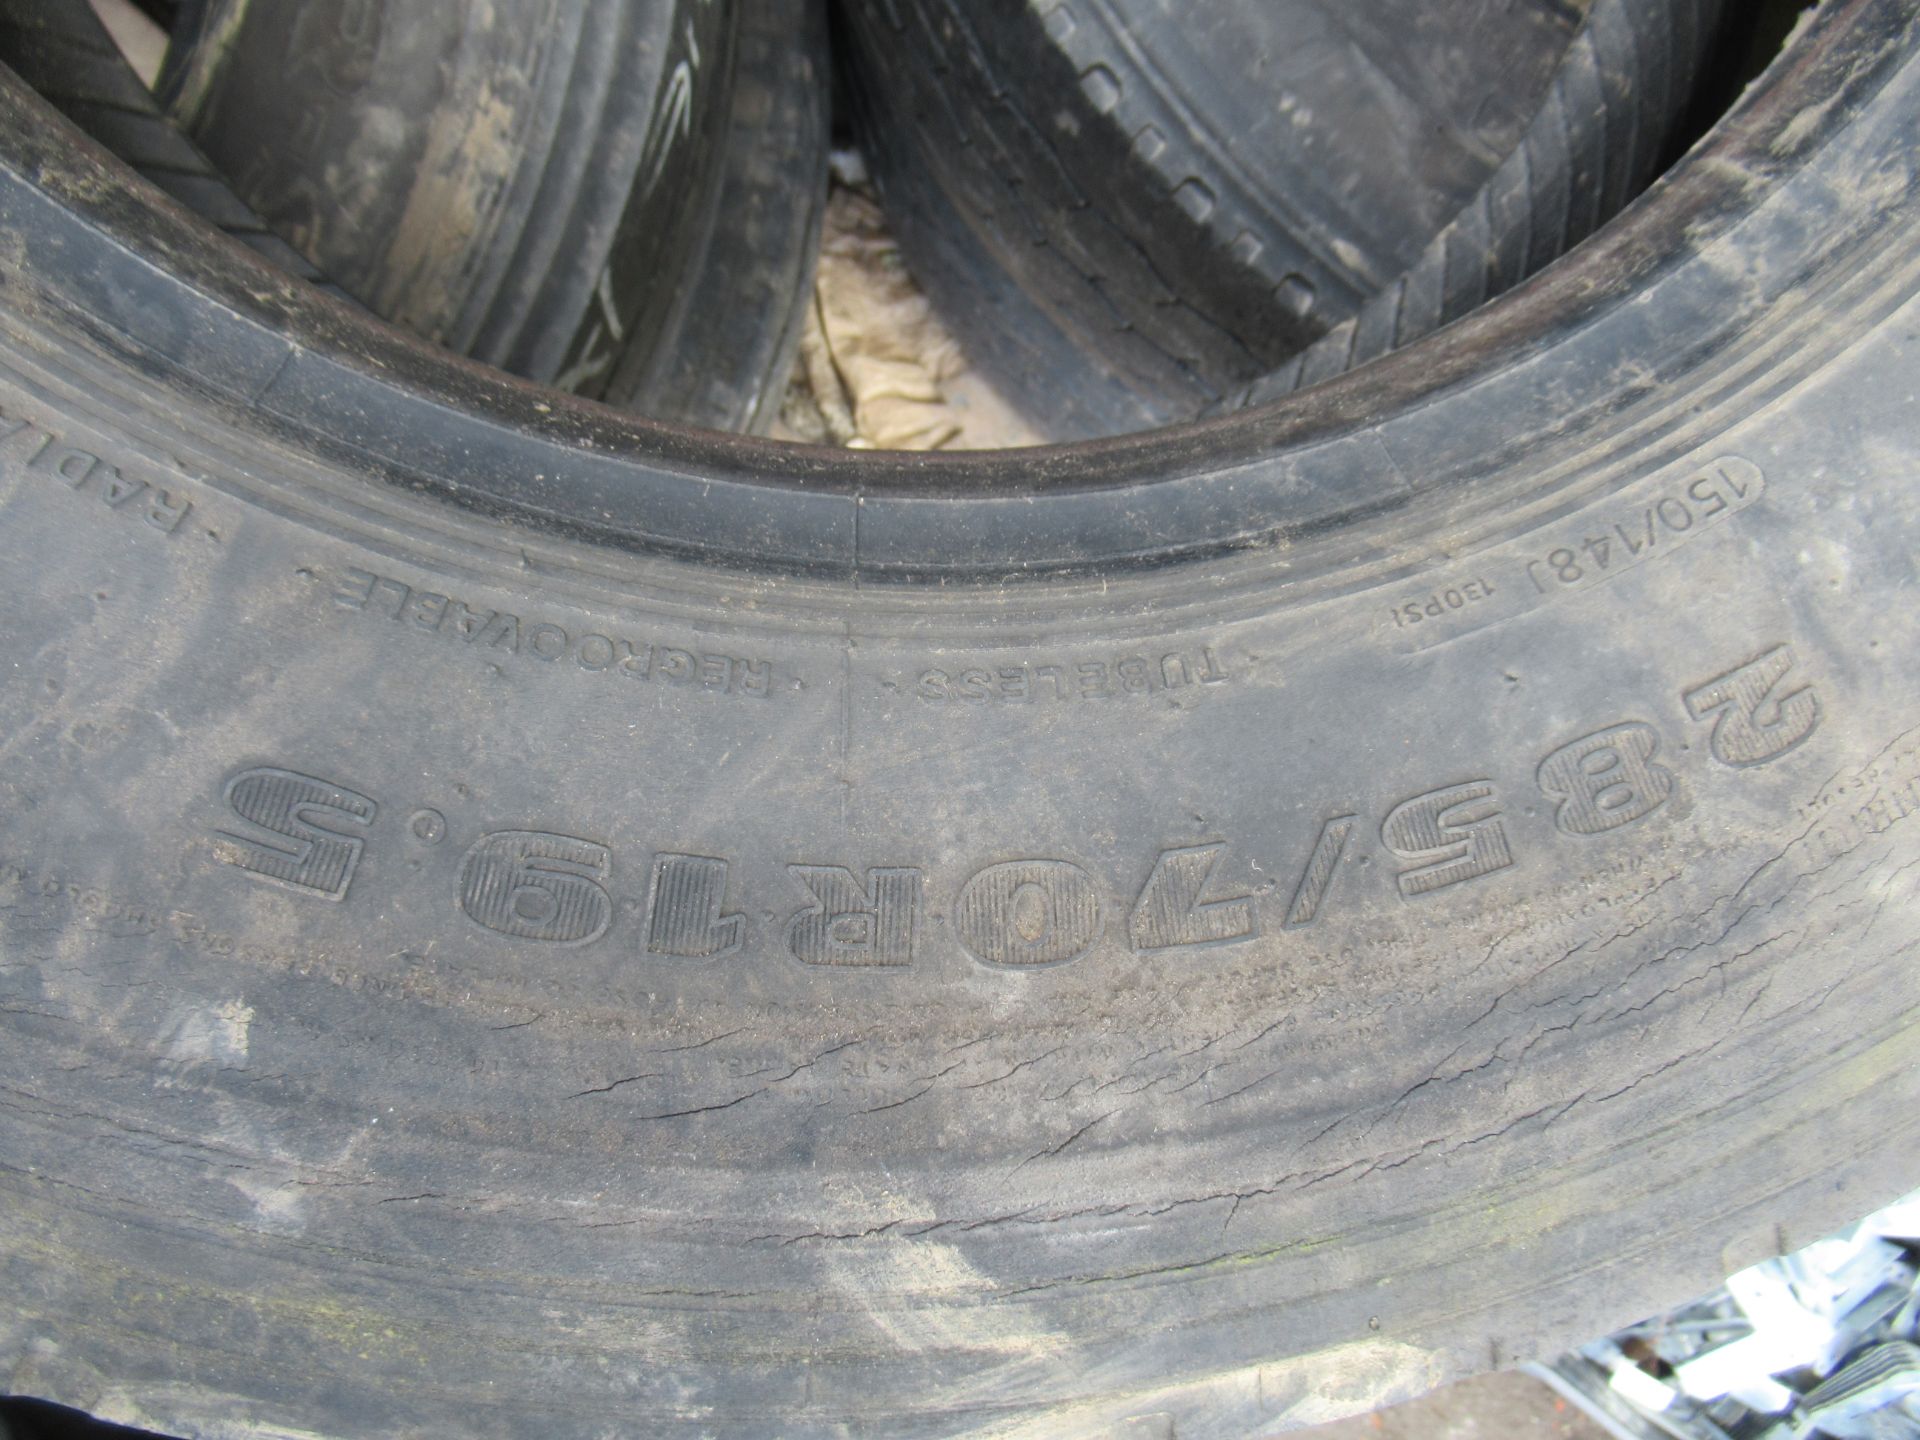 5x Partworn Tyres ( 285/70R/19.5, 245/70R/19.5, 245/70R/19.5, 285/70R/19.5, 245/70R/19.5) - Bild 2 aus 7